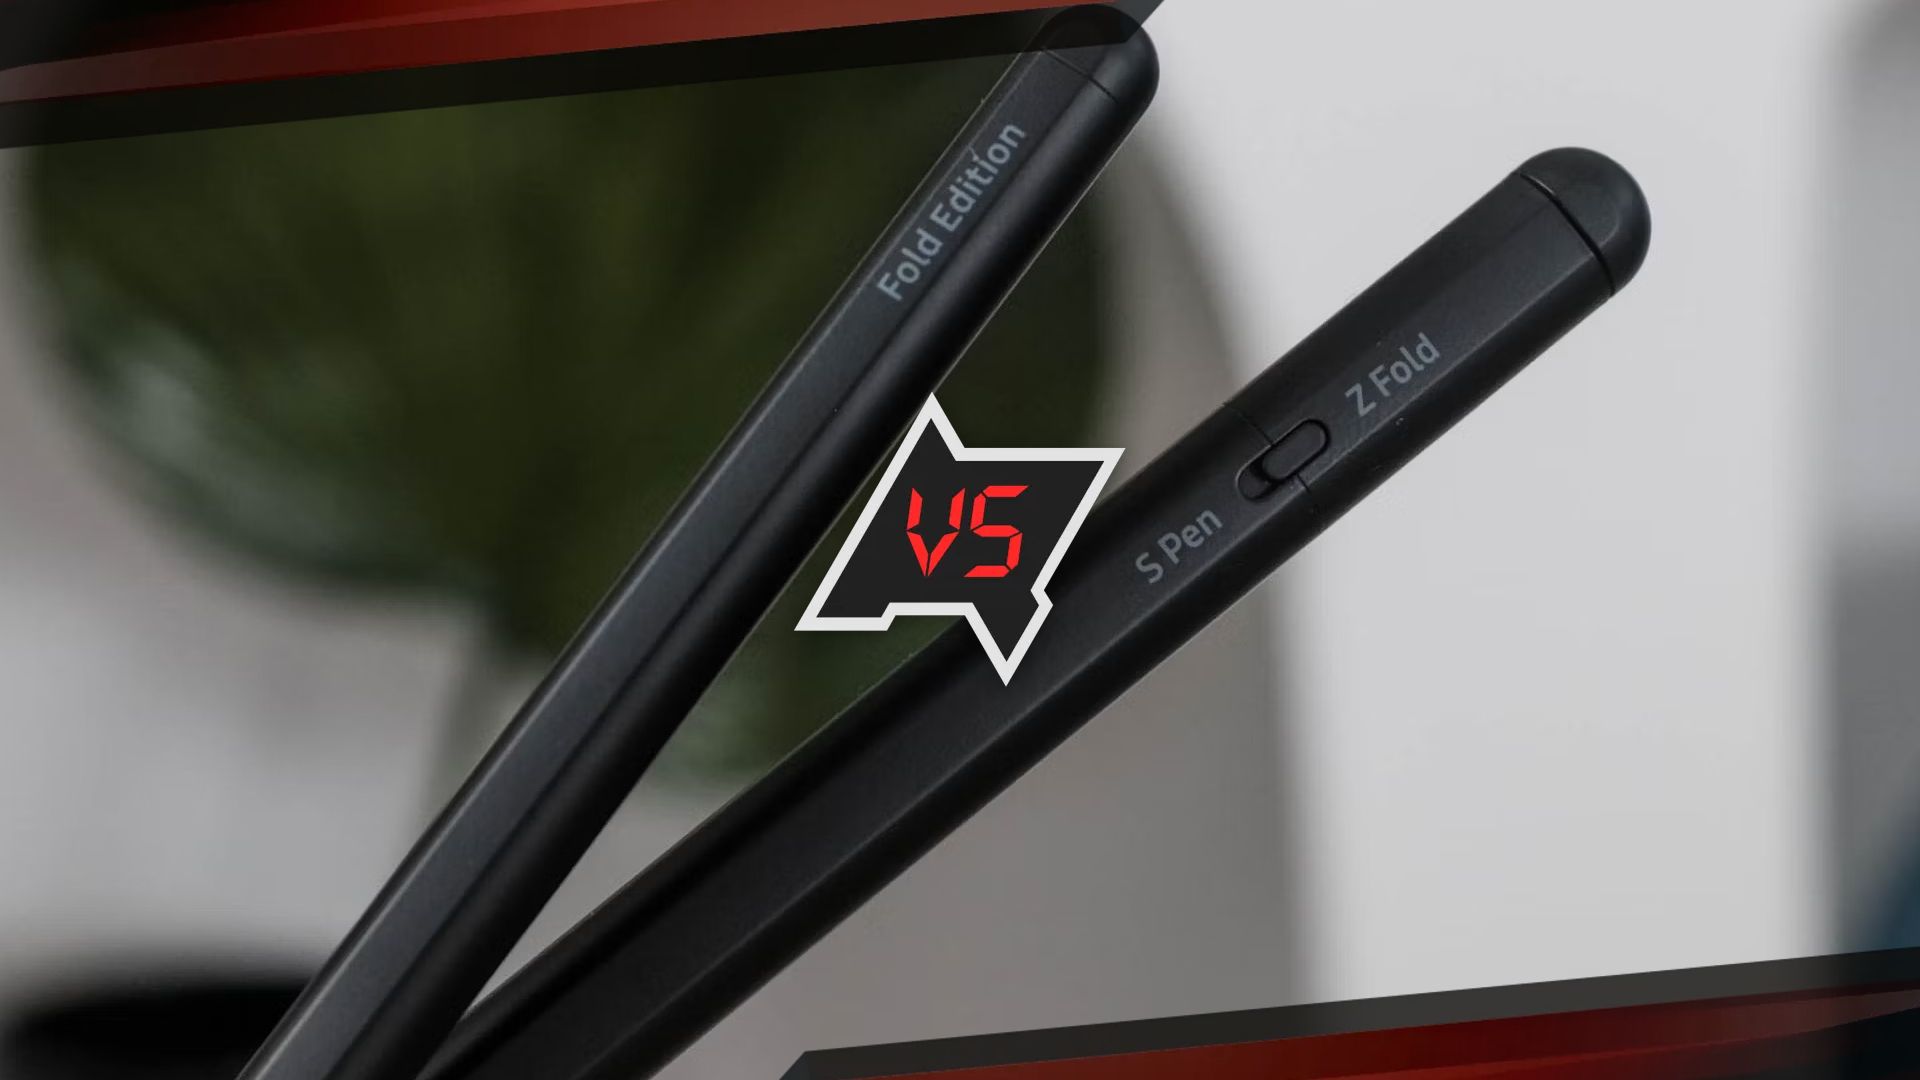 S Pen vs. S Pen Fold vs. S Pen Pro: What's the Difference?